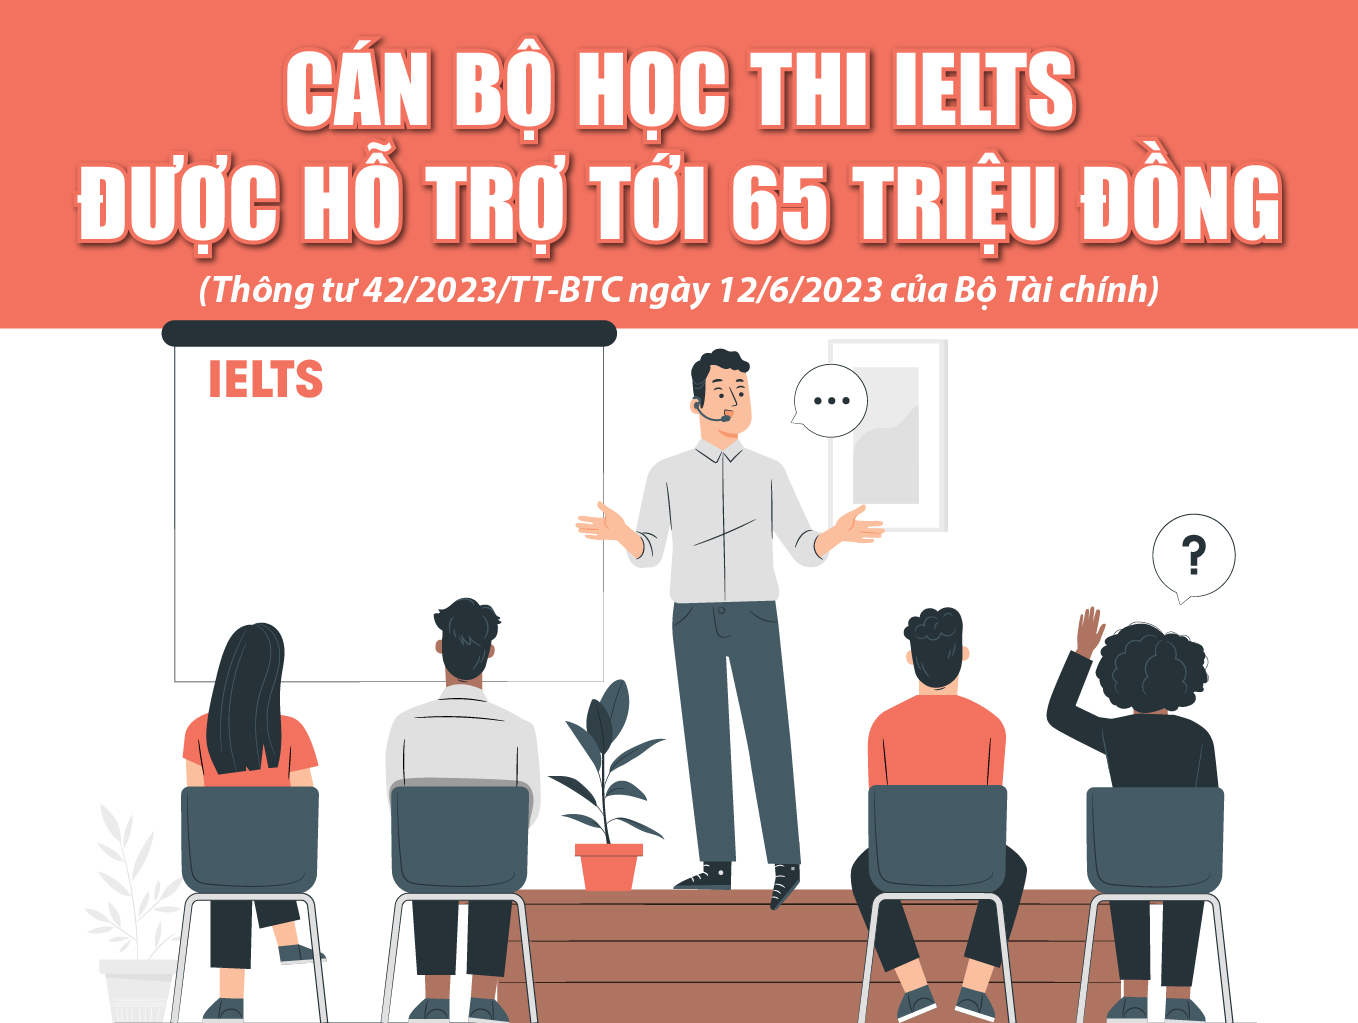 [Infographics] - Cán bộ học thi IELTS được hỗ trợ tới 65 triệu đồng